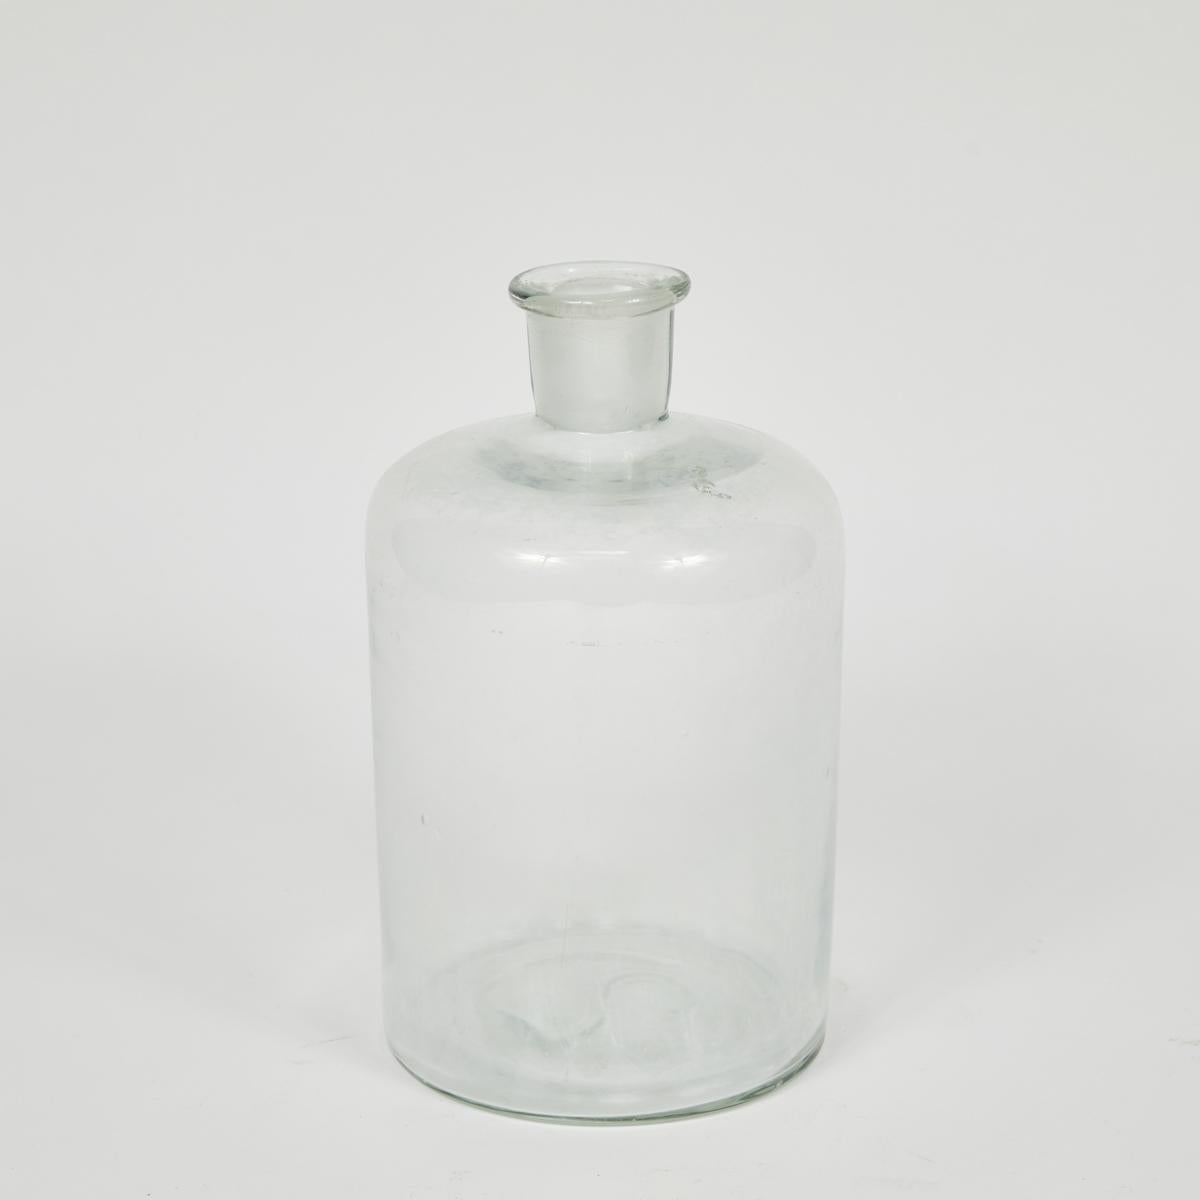 Diese englischen Glasflaschen stammen aus den frühen 1940er Jahren. Sie sind in 2 Größen erhältlich und werden mit passenden Stopfen geliefert. Außerdem können sie als Vasen oder als schöne dekorative Ergänzung für jedes Kabinett dienen. drei